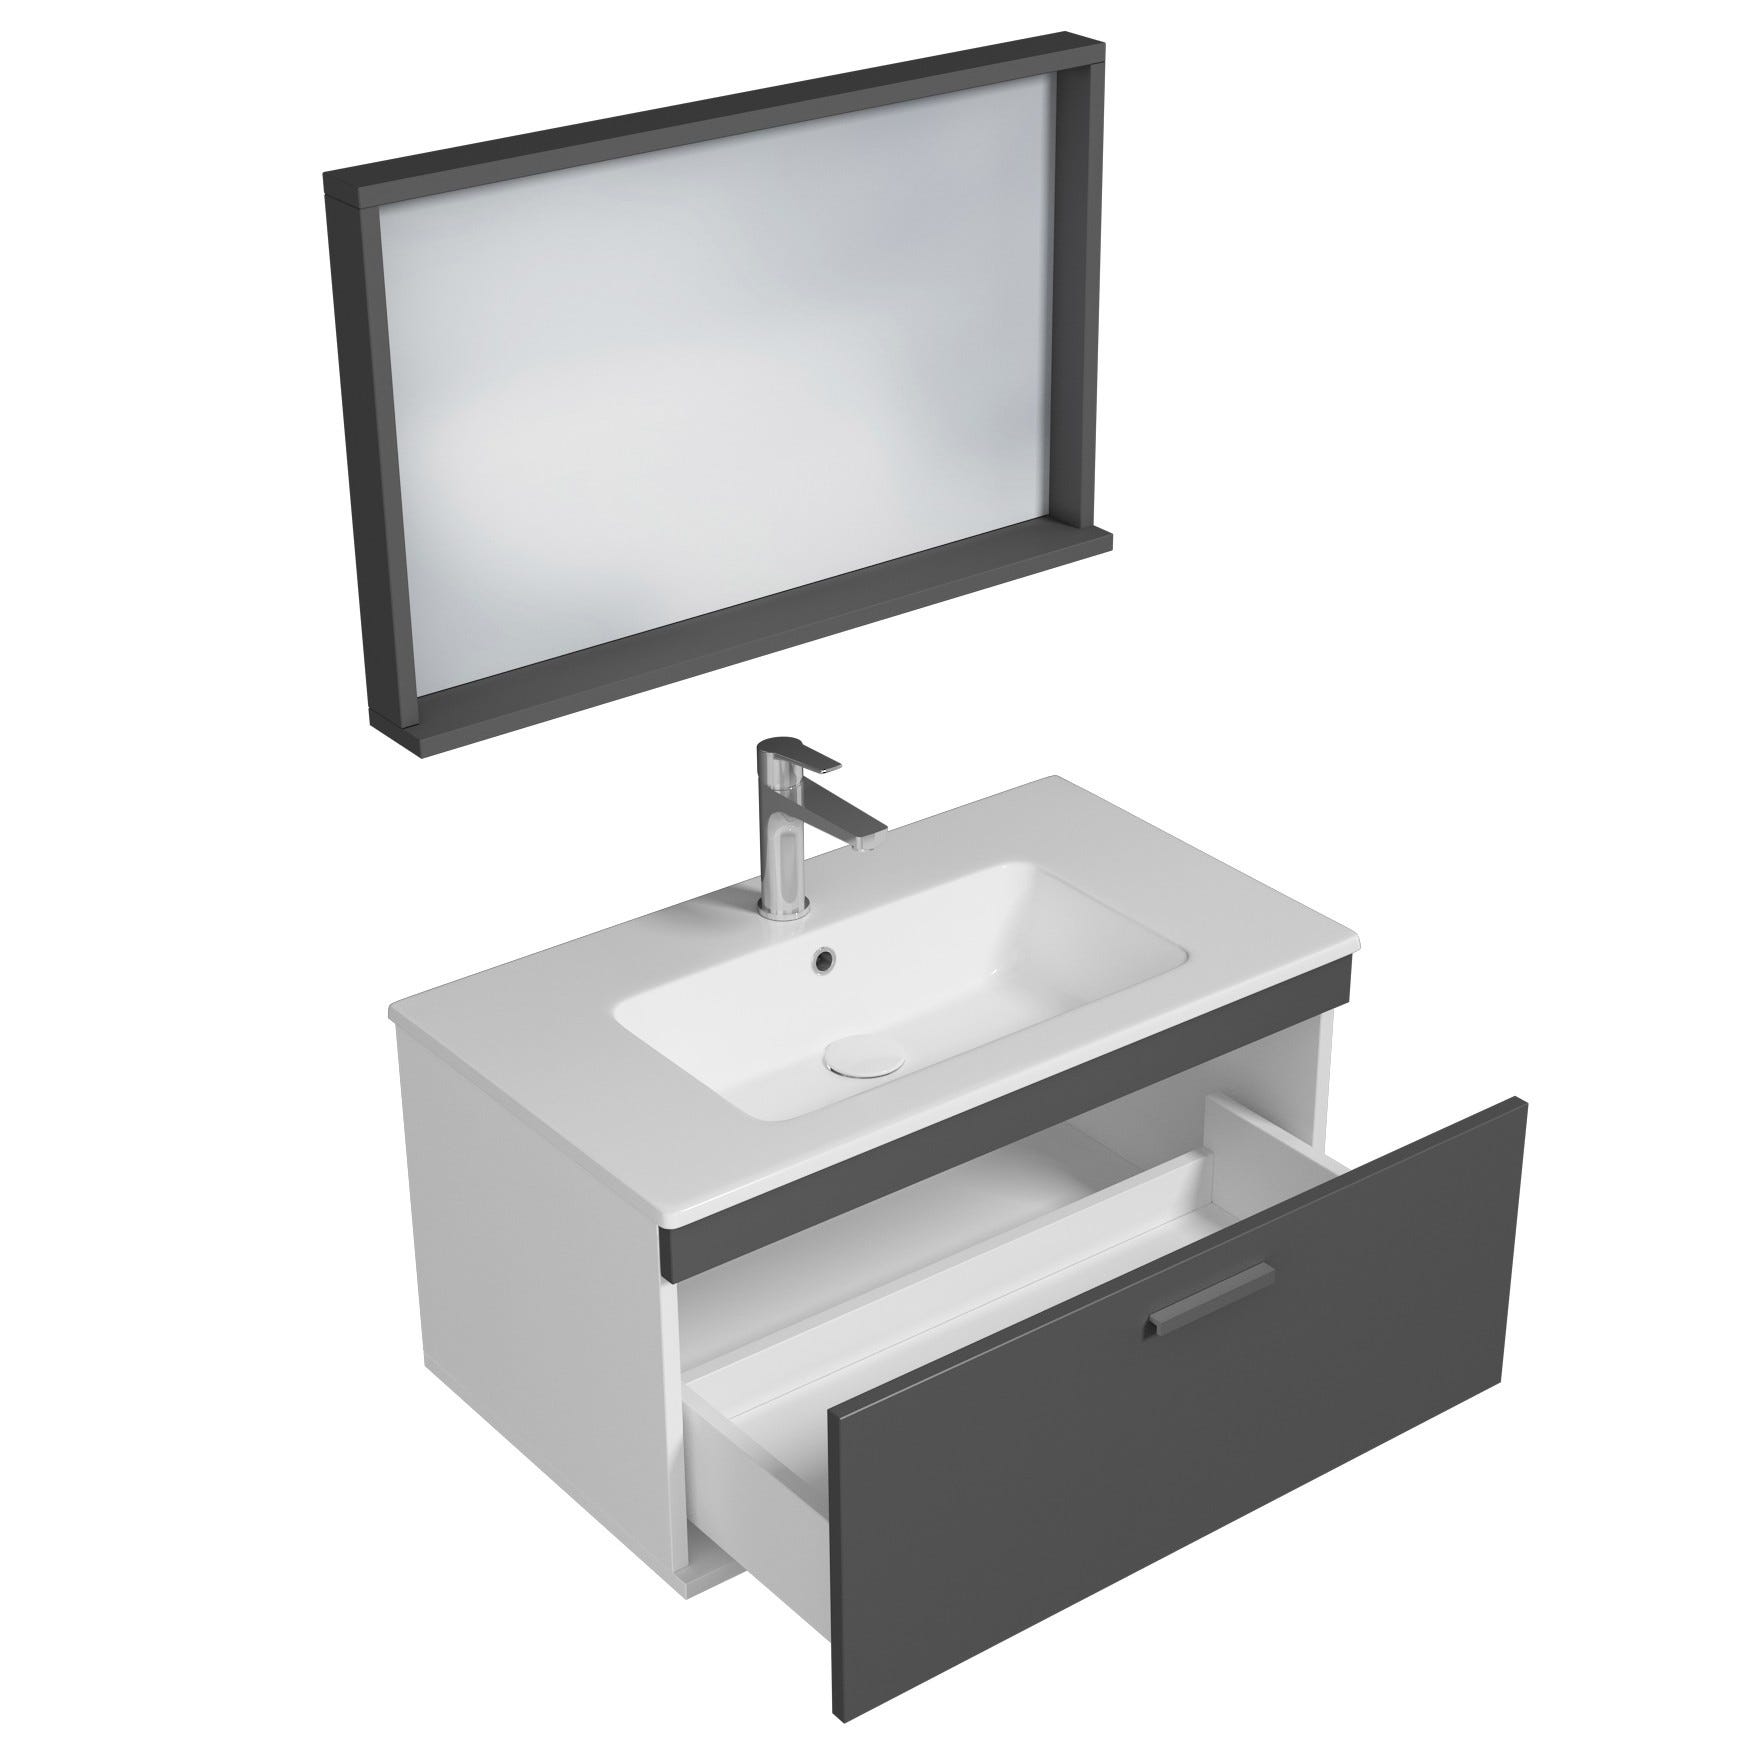 RUBITE Meuble salle de bain simple vasque 1 tiroir gris anthracite largeur 80 cm + miroir cadre 1